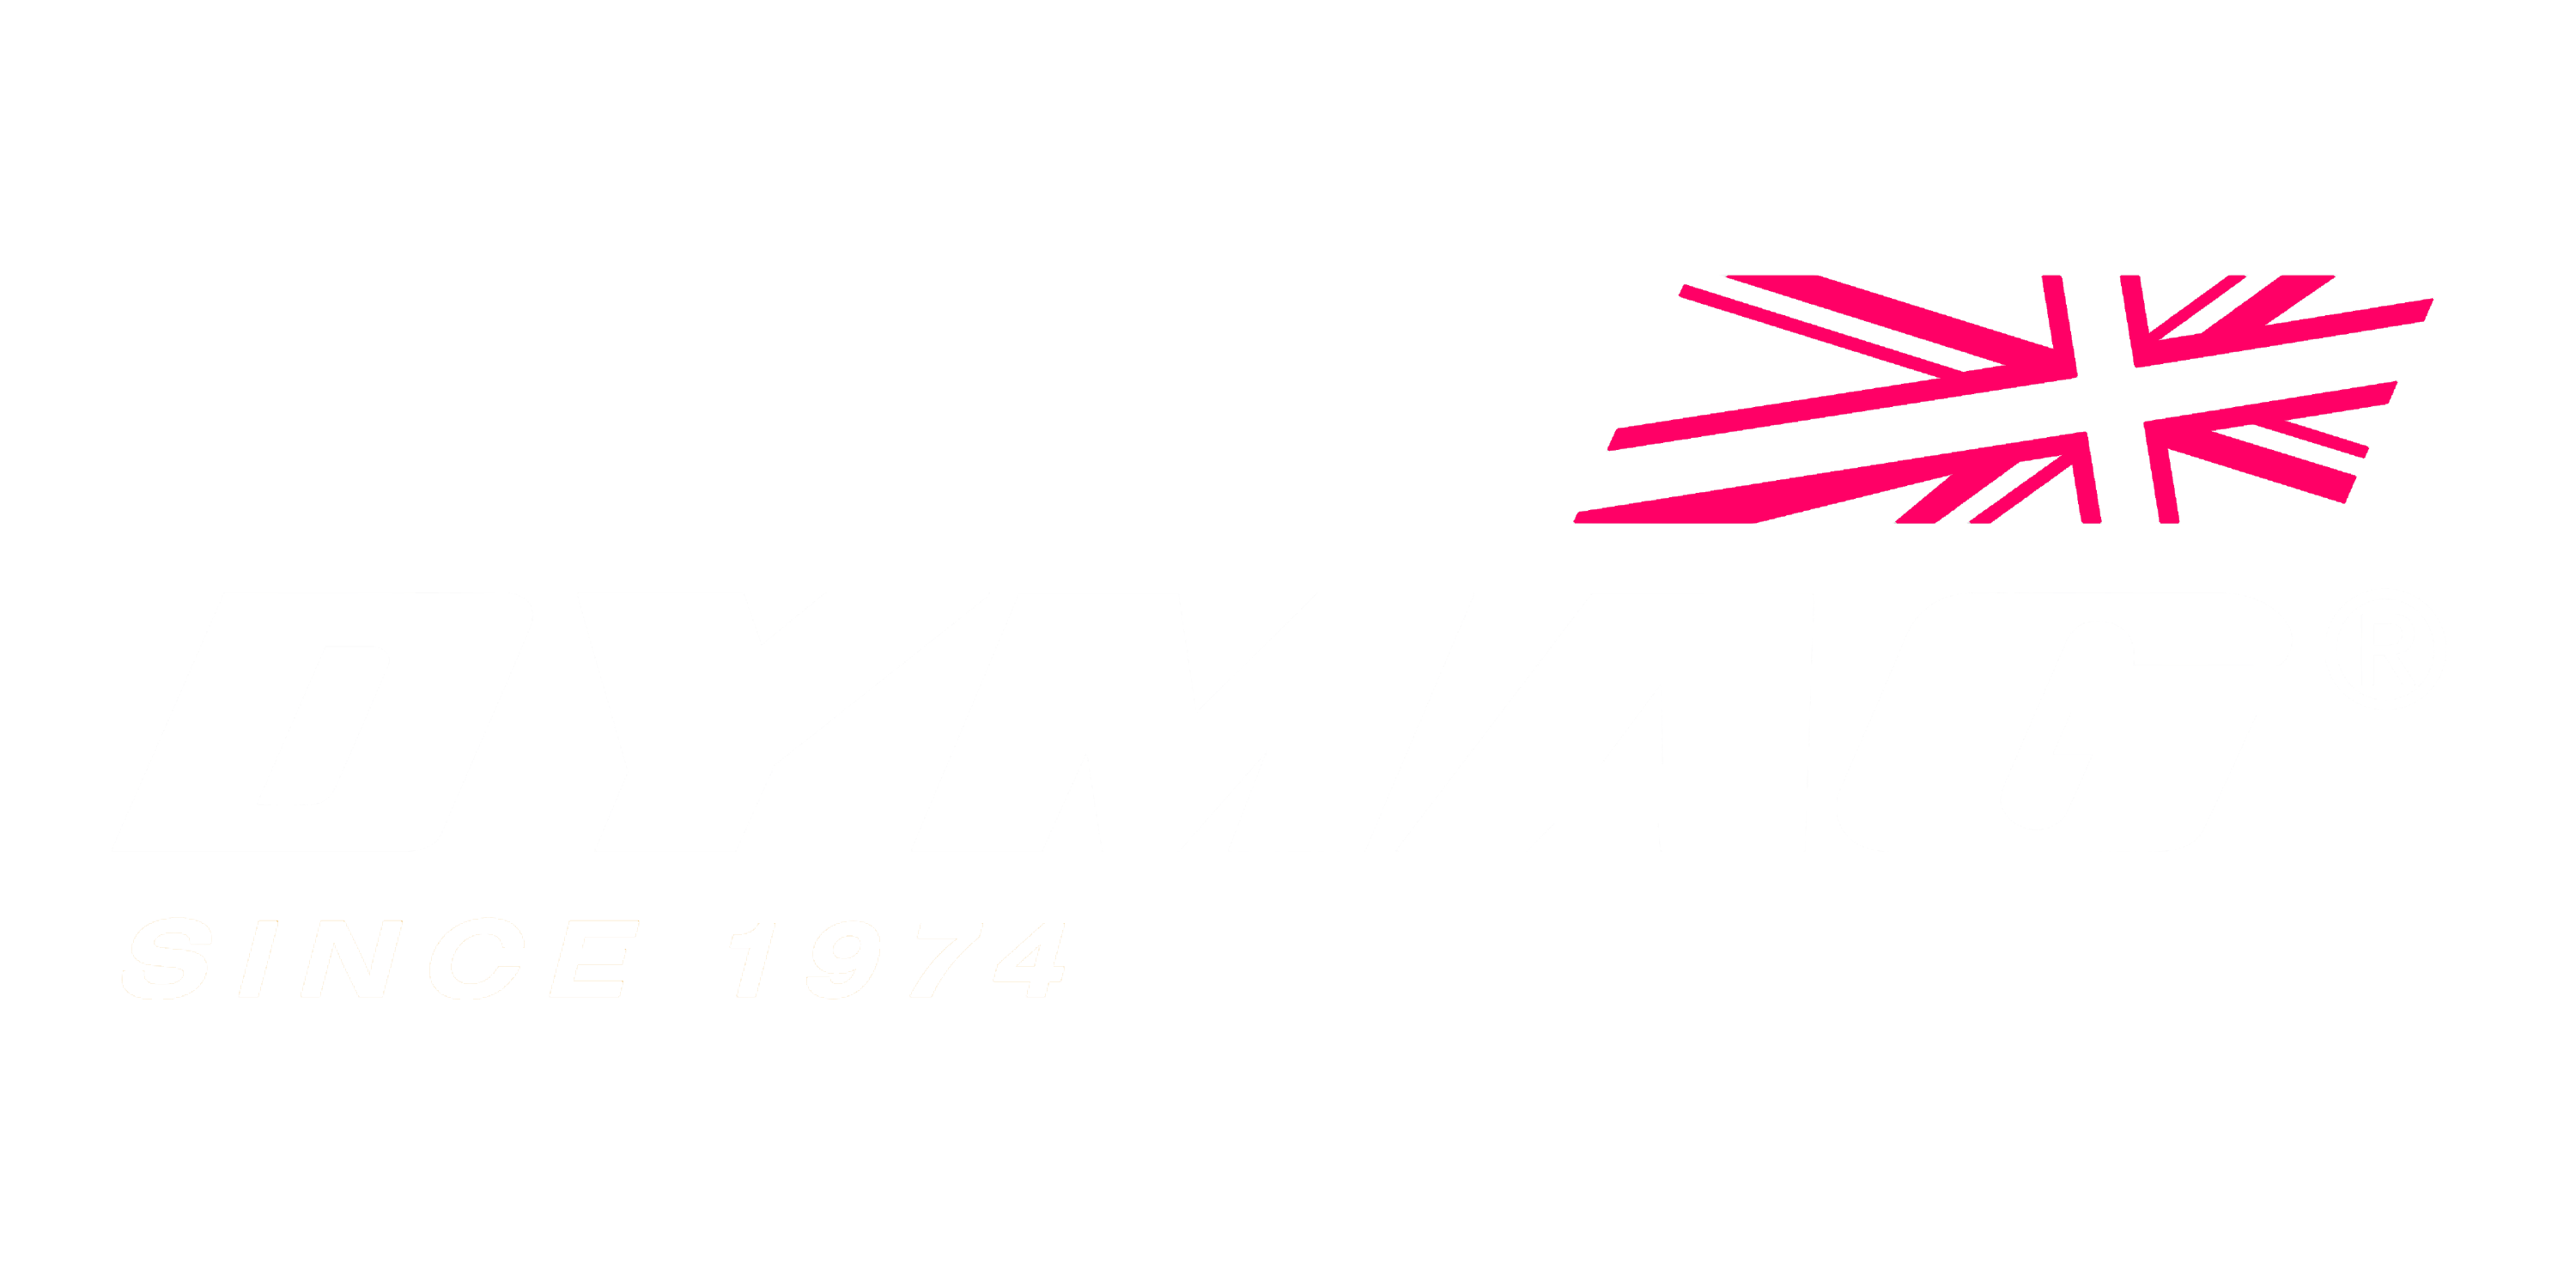 Dymag Logo